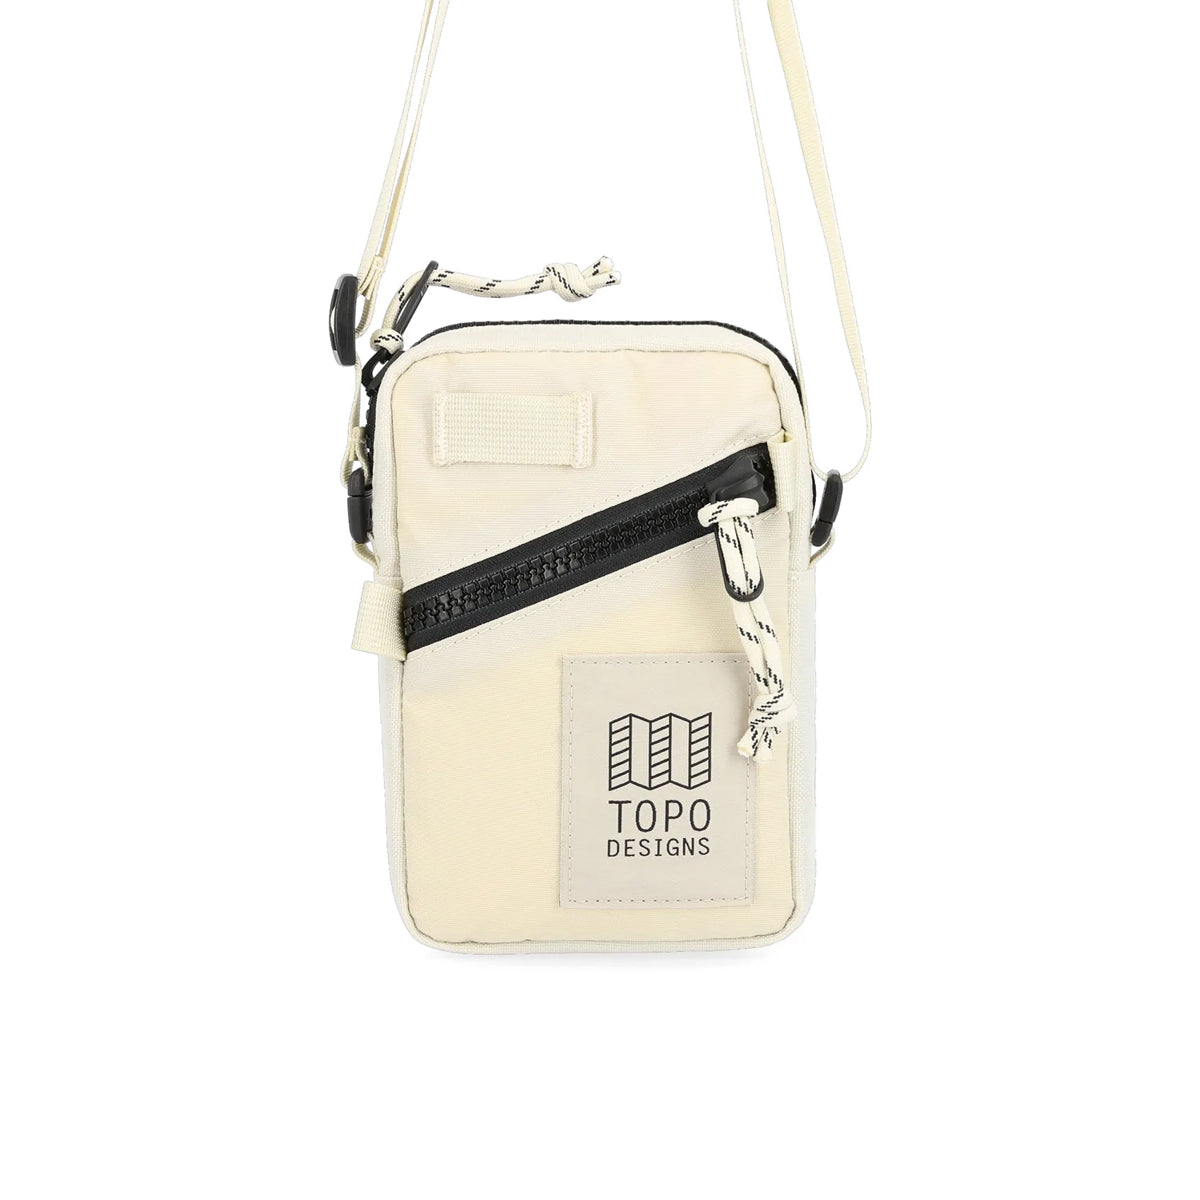 Topo Designs : Mini Shoulder Bag : Bone White